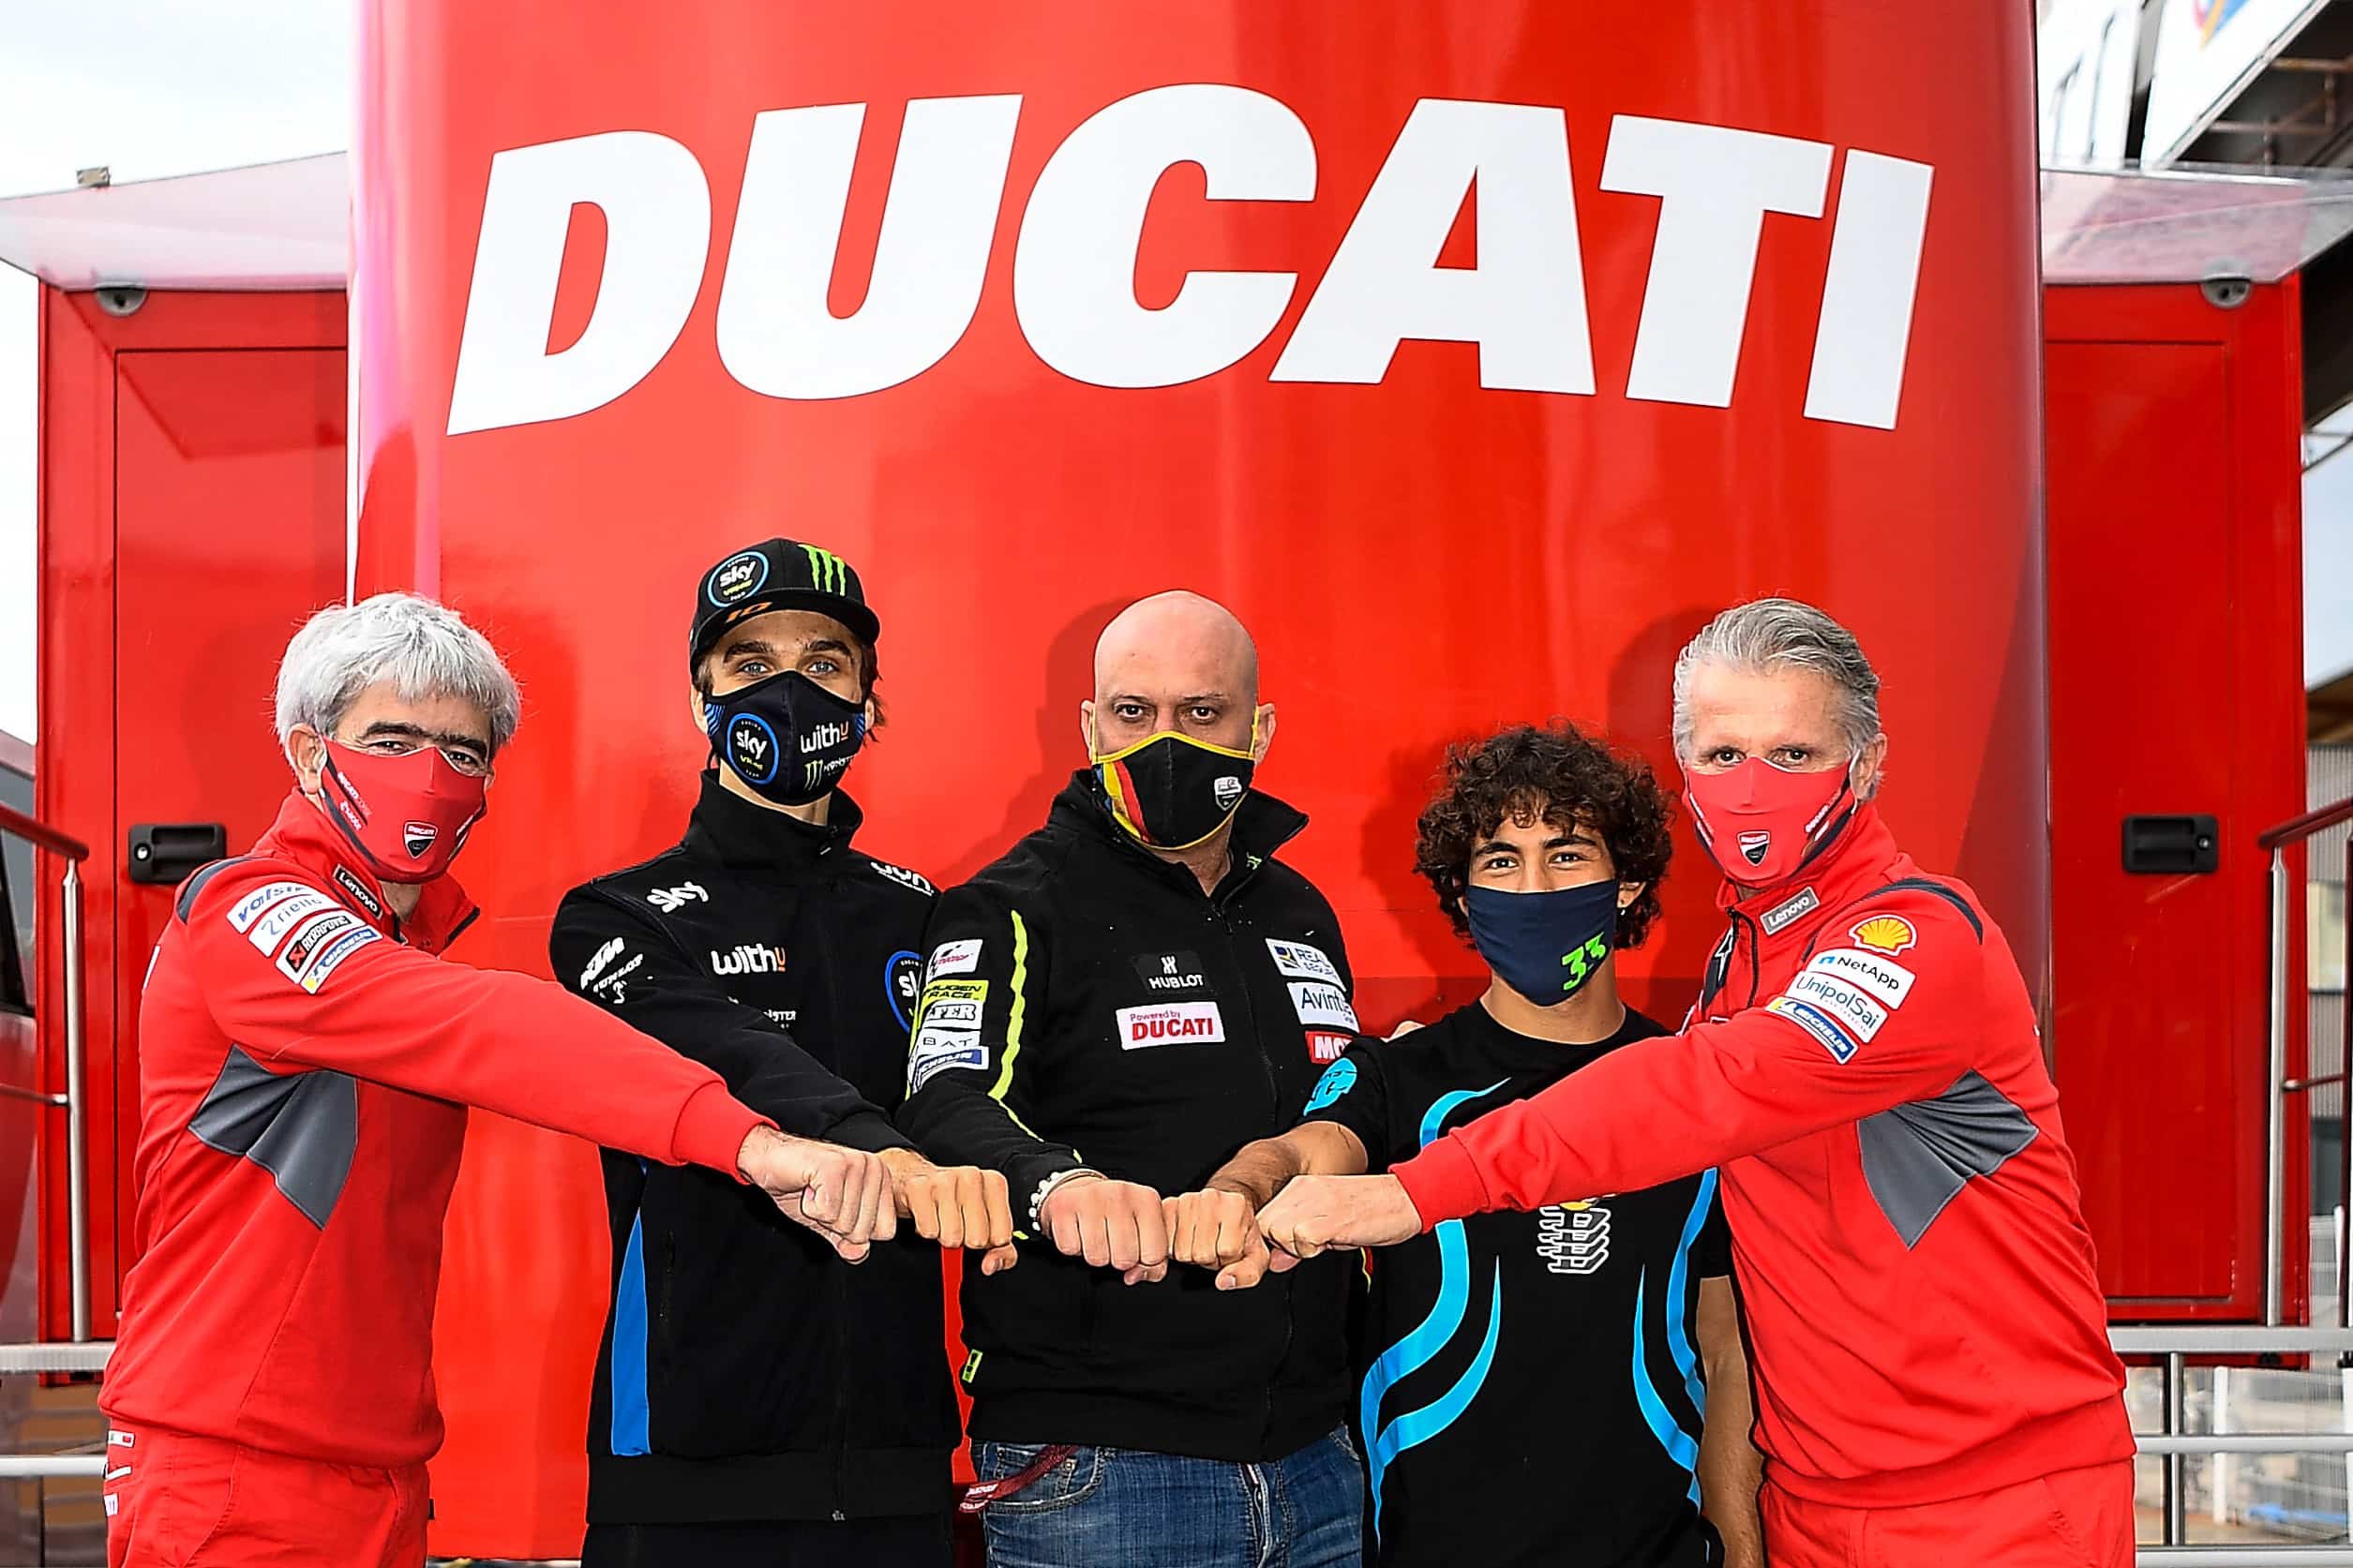 ルカ・マリーニ、エネア・バスティアニーニ　2021年よりEsponsorama RacingからMotoGPデビュー